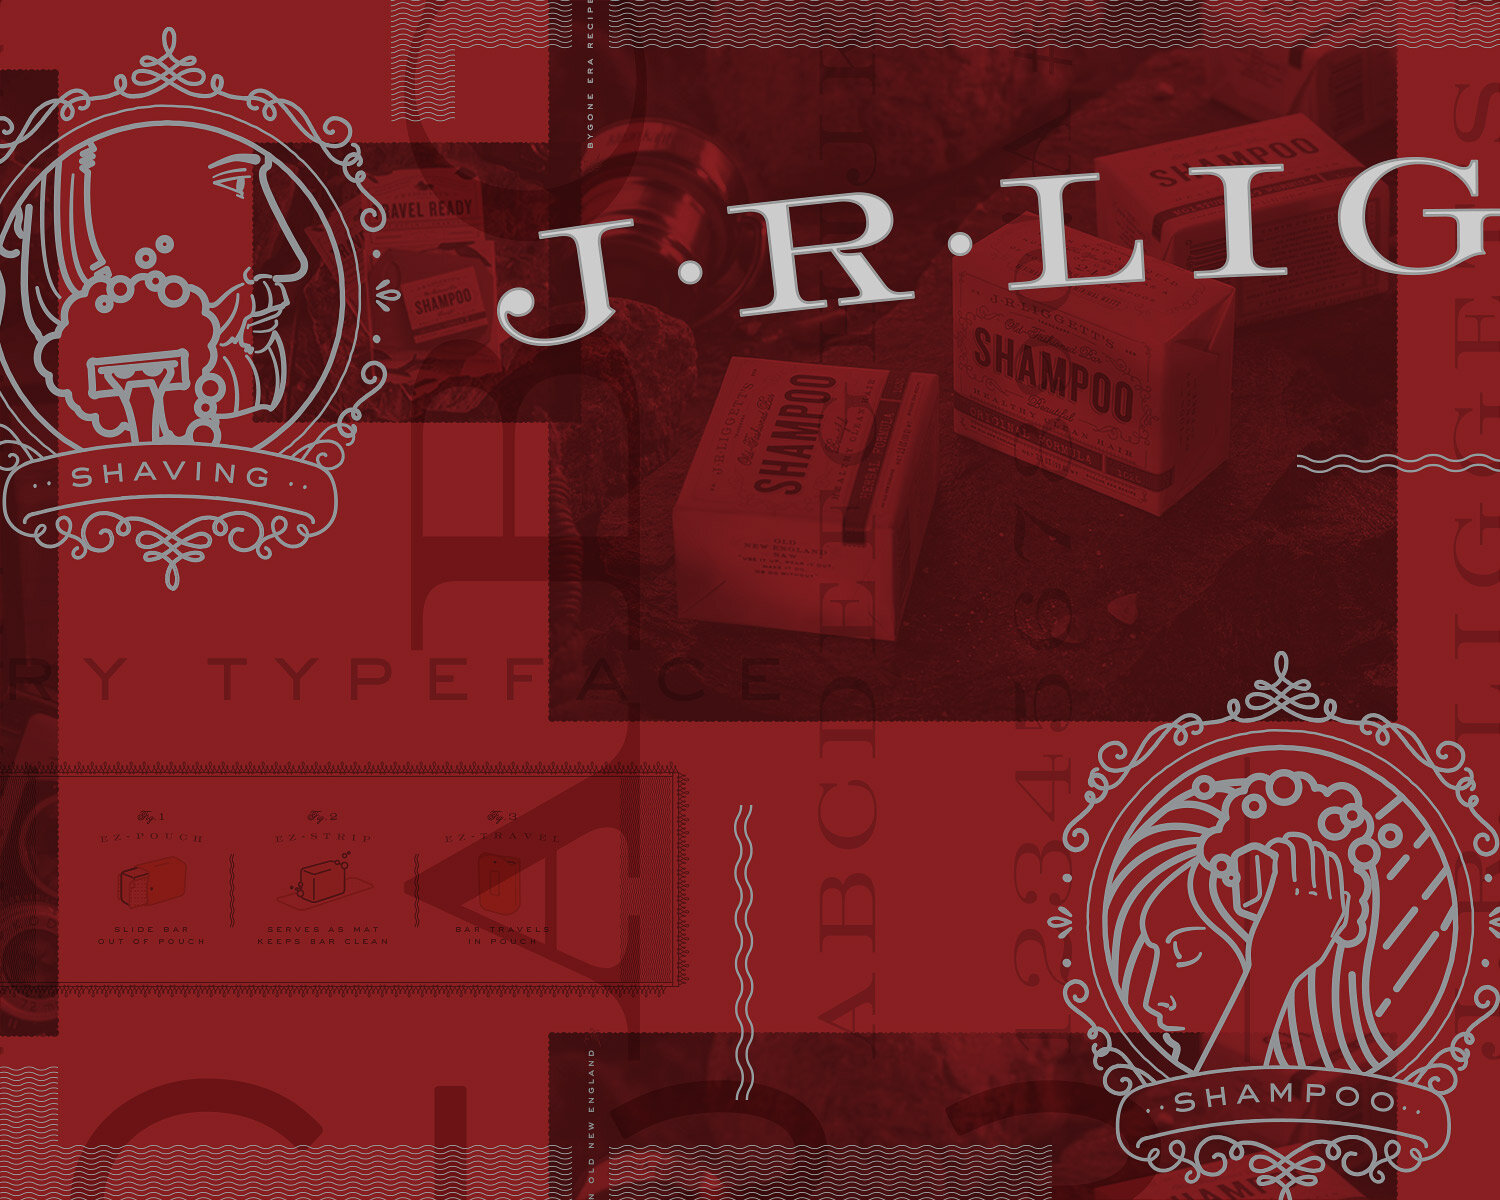 J.R. Liggett's: Packaging Design